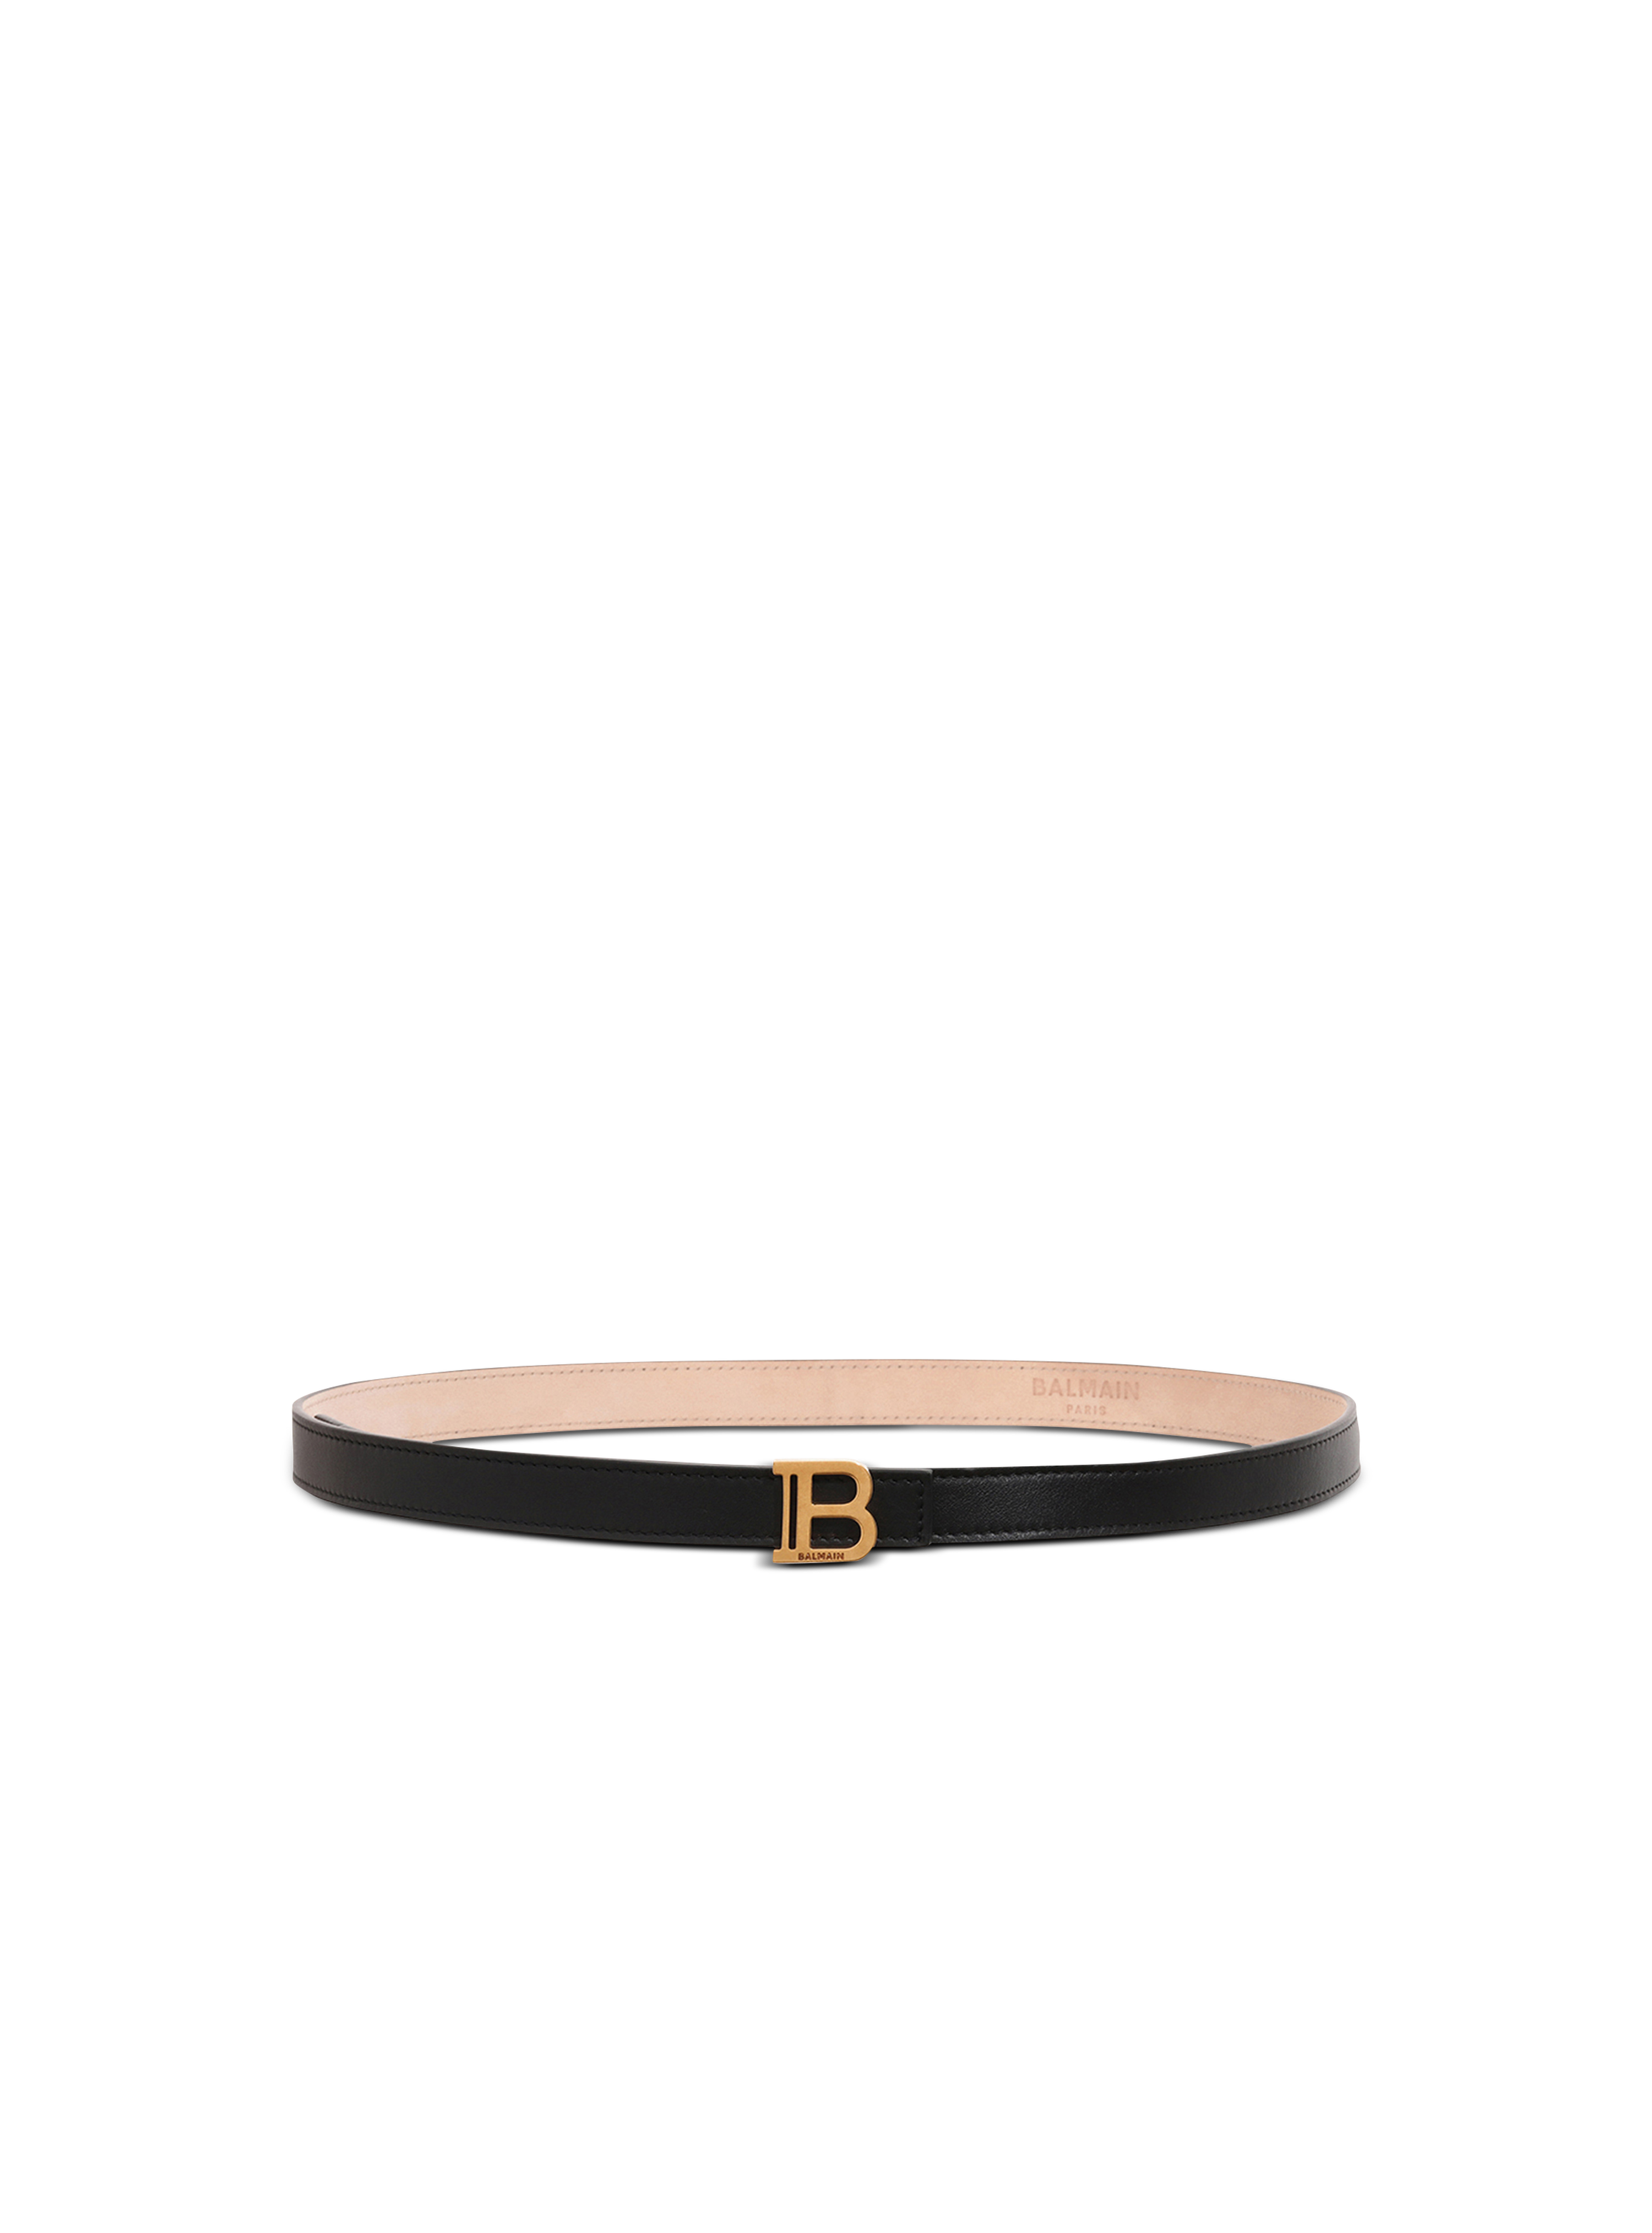 B-Belt皮革腰带, black